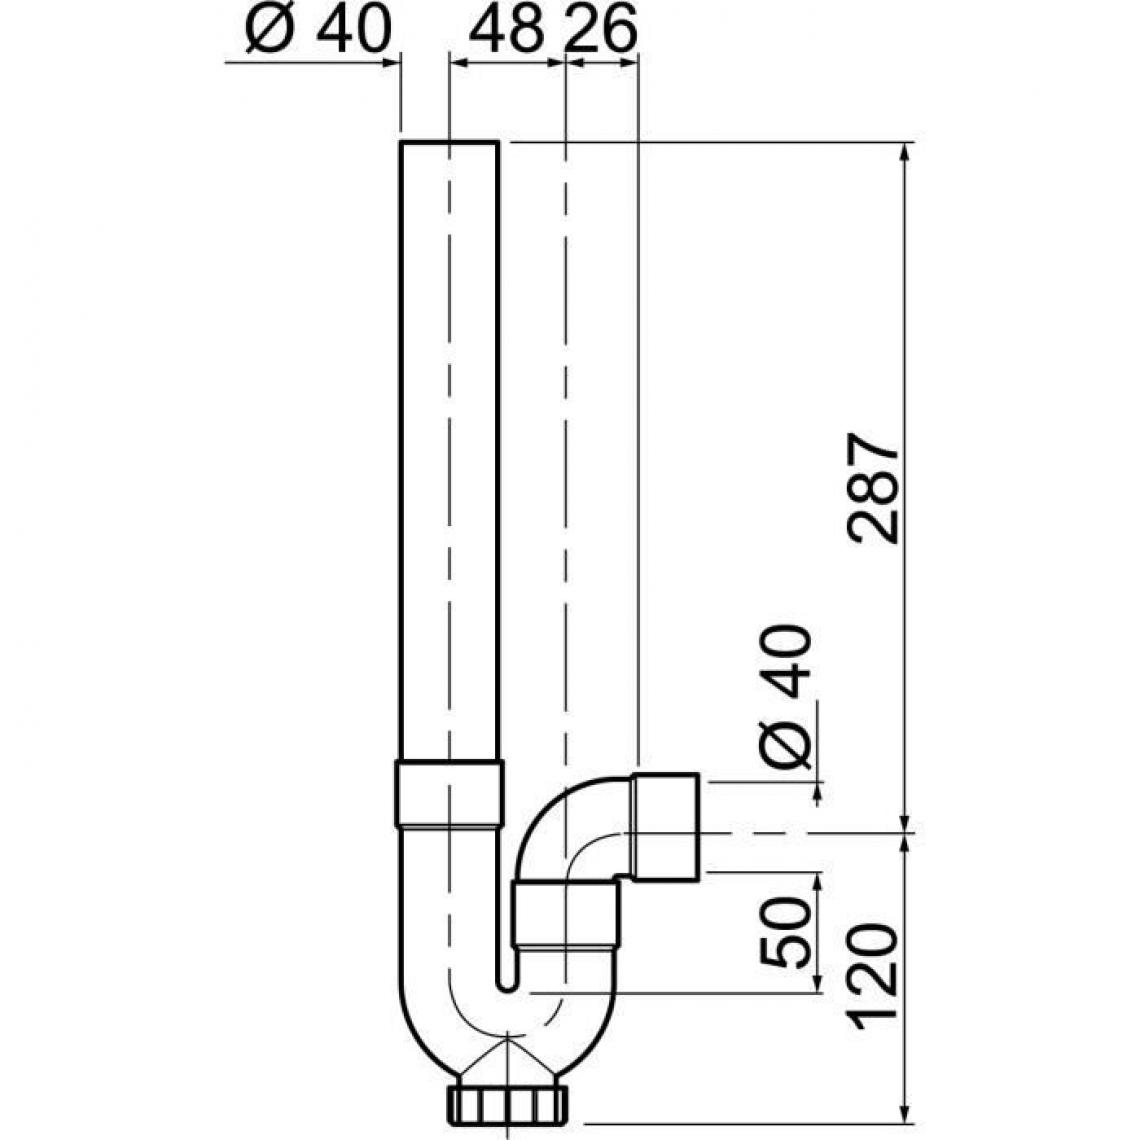 Icaverne - PIECE DETACHEE SANITAIRE PLOMBERIE Siphon simple crosse SP5001 - PVC - Machine a laver - Sortie horizontale - a coller - Tuyau de cuivre et raccords